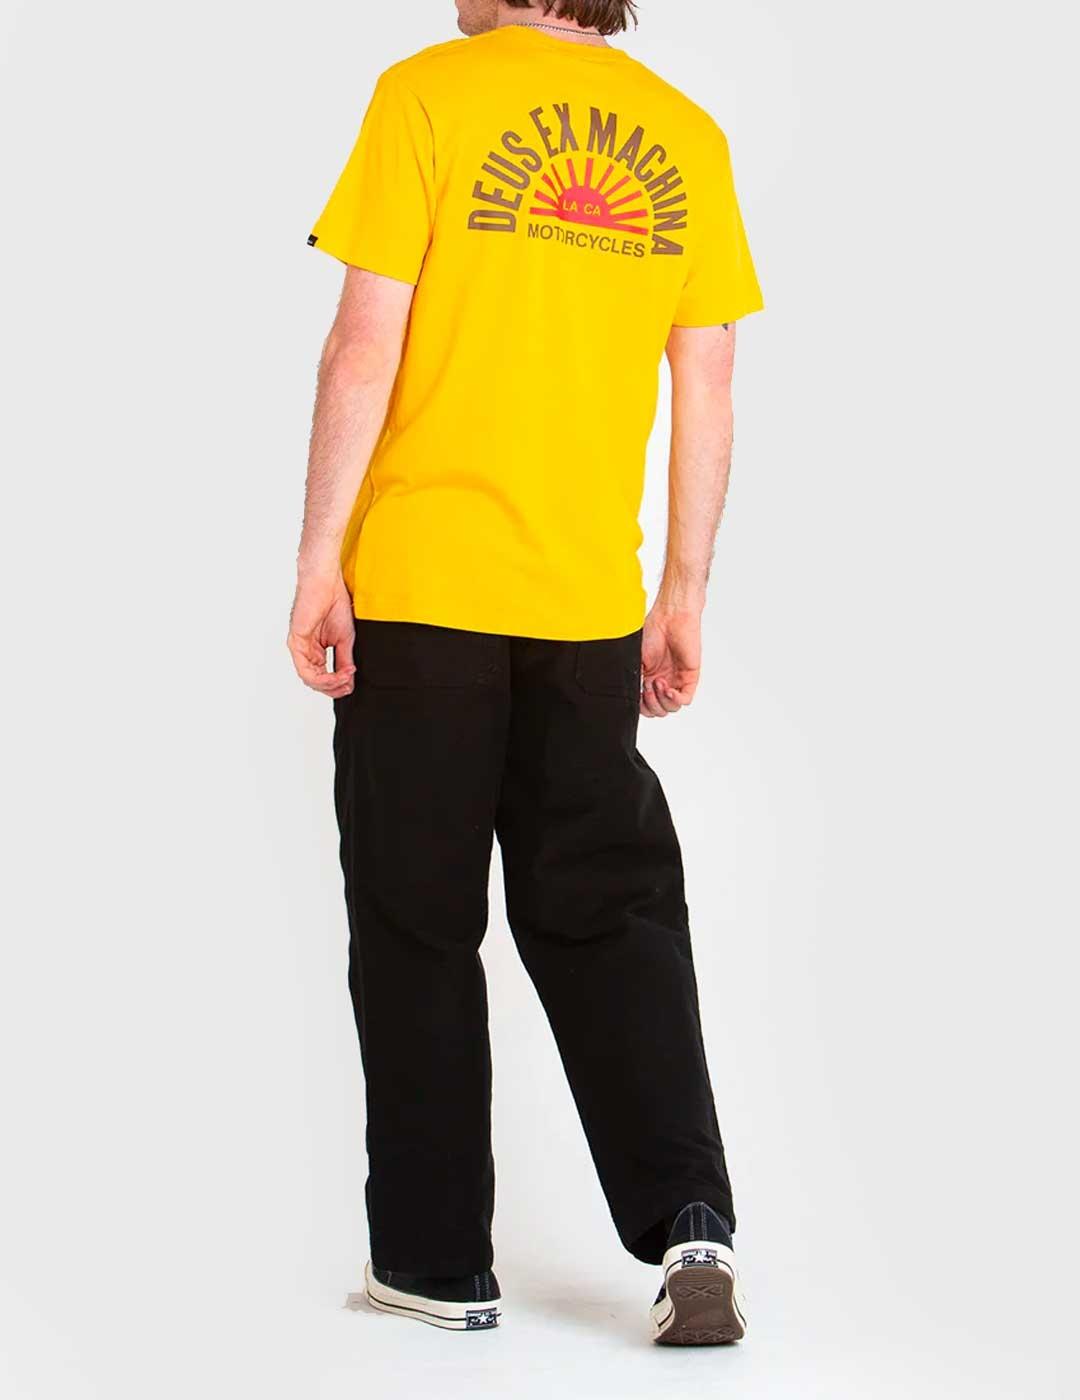 Camiseta Deus Ex Machina Sunflare amarilla para hombre